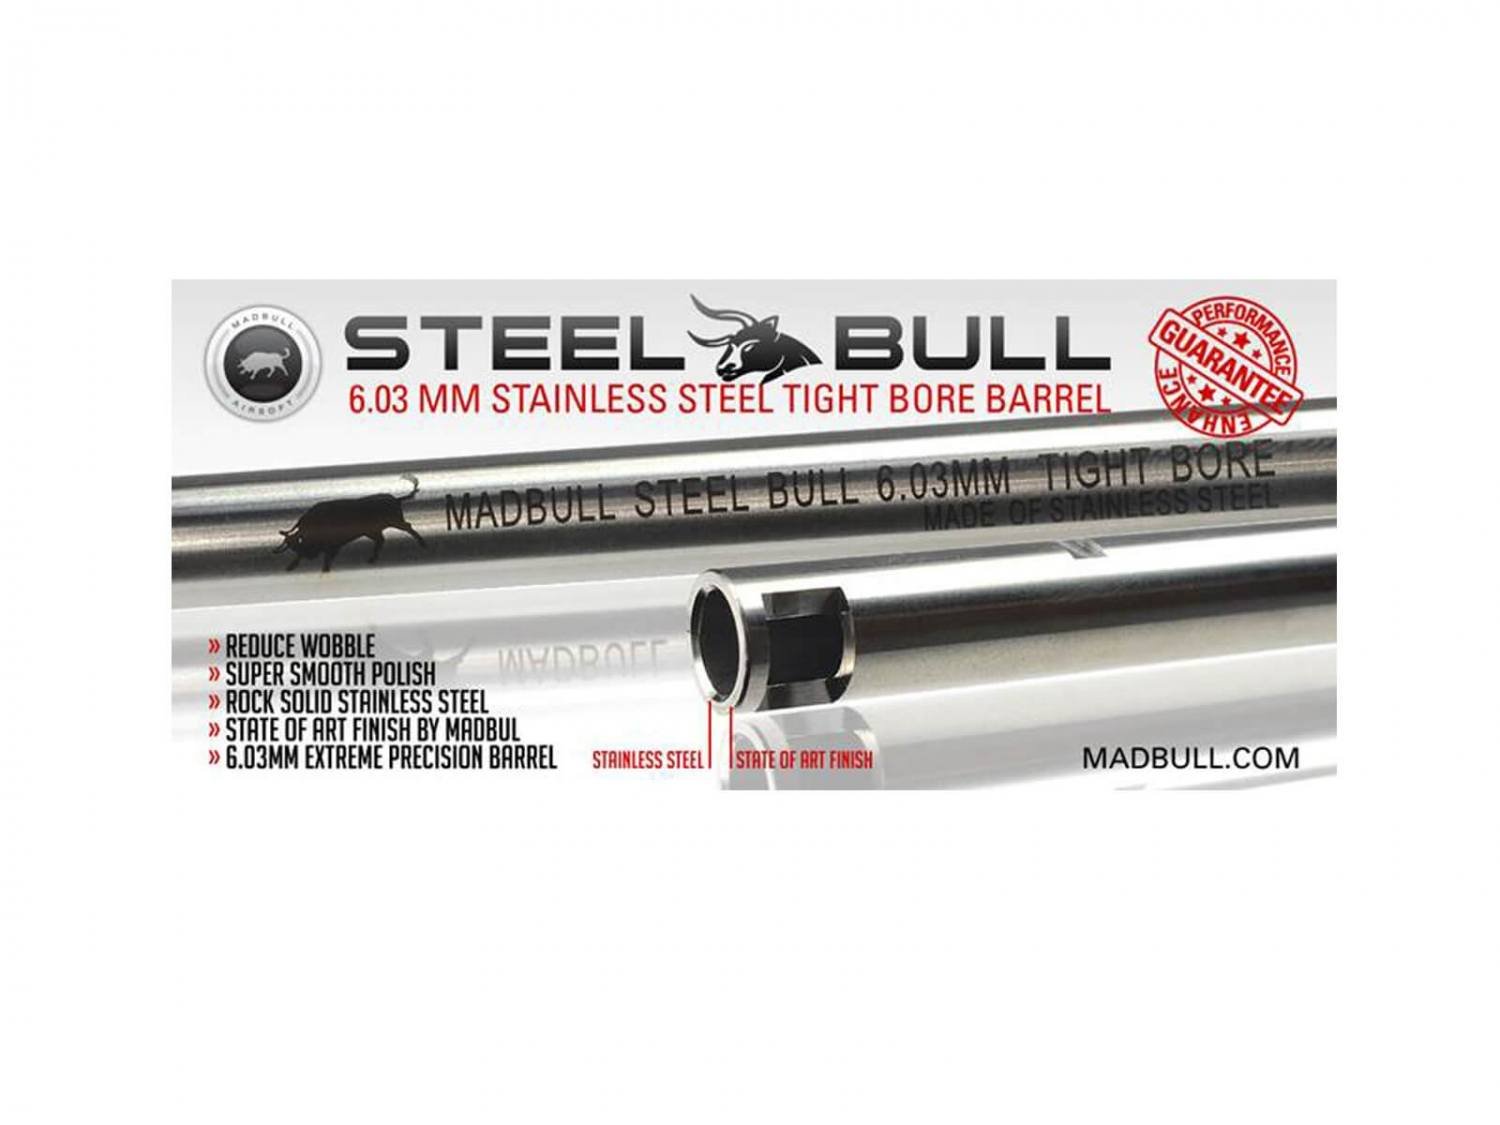 Madbull SteelBull lb, 247 mm